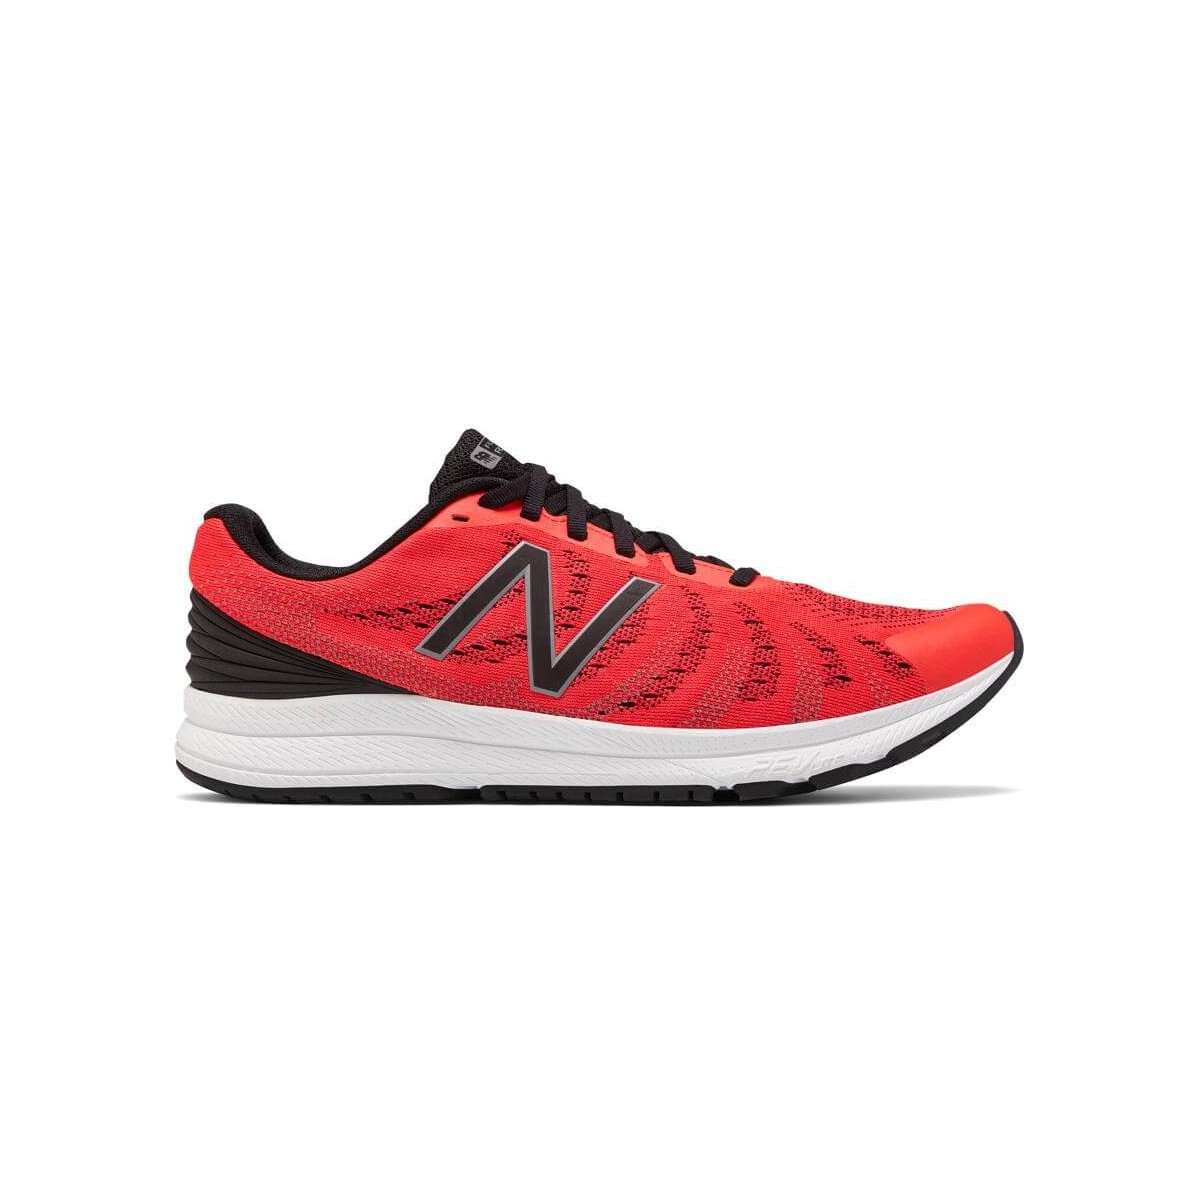 New Balance Rush V3 chaussures rouge et noir